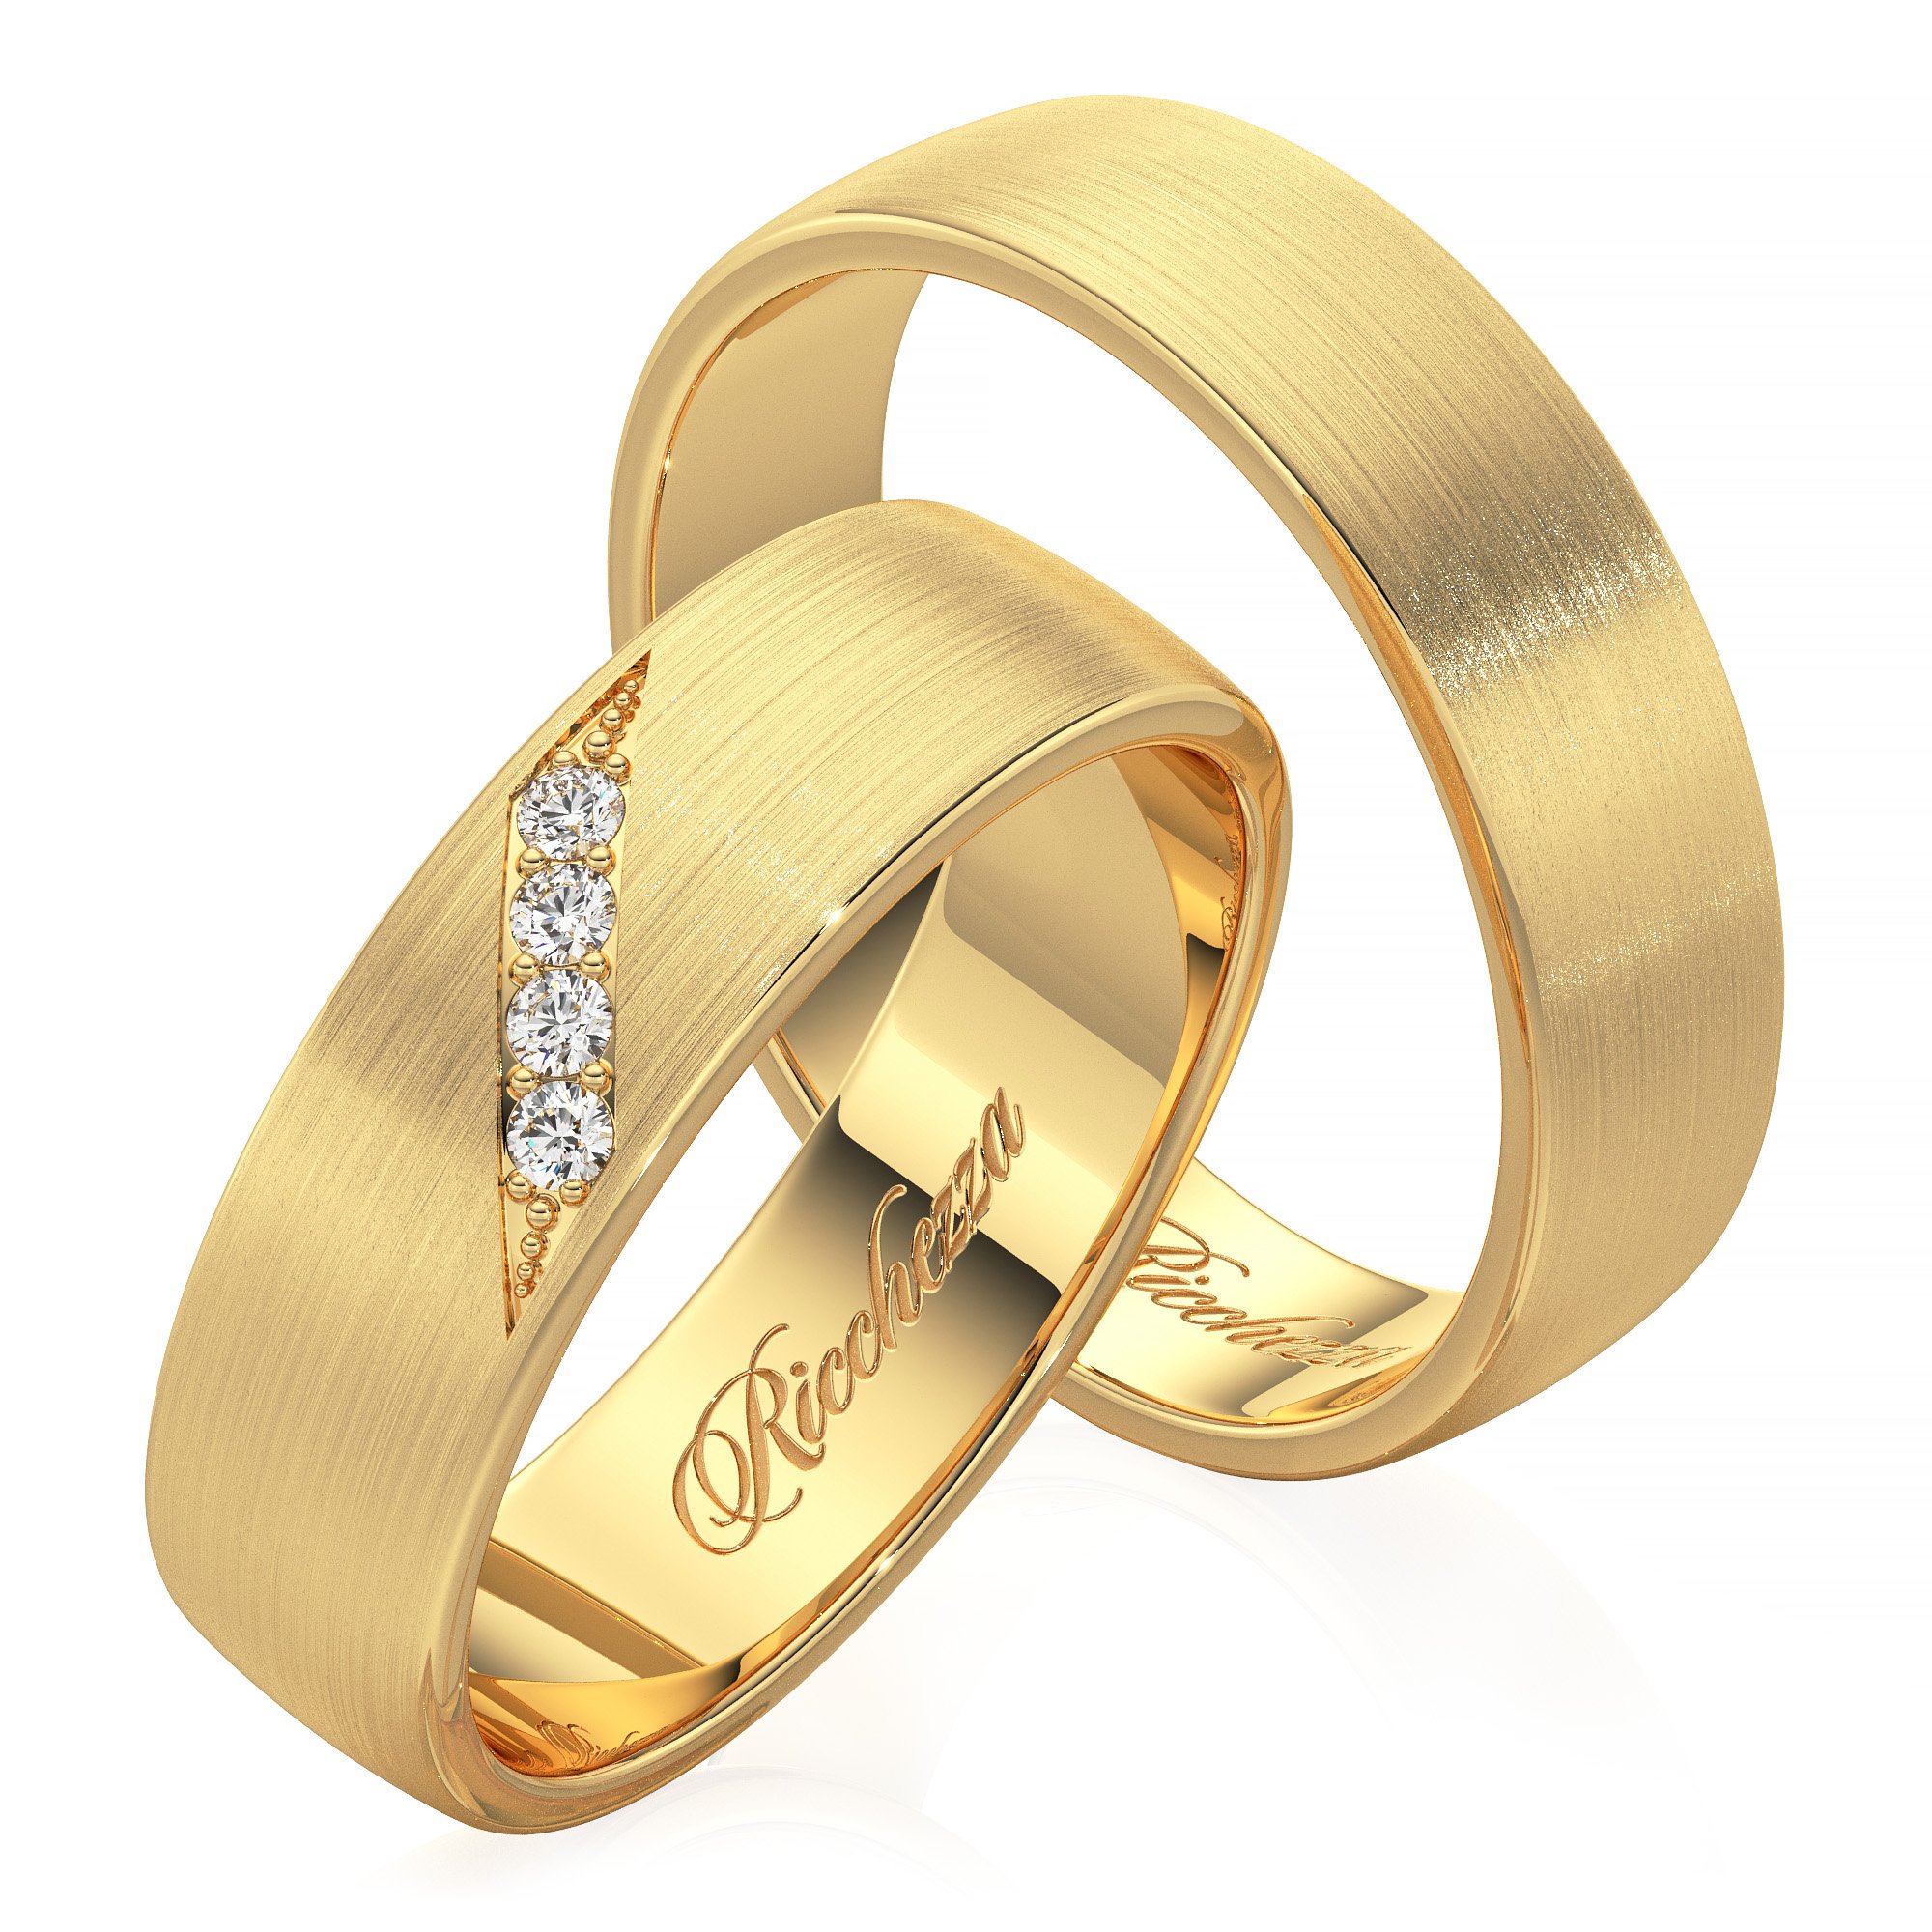 Купить недорого обручальные кольца золото. Кольца обручальные парные золотые Адамас. Обручальные кольца 585. Обручальные кольца парные 585. Золотые кольца обручалки 585 пробы.